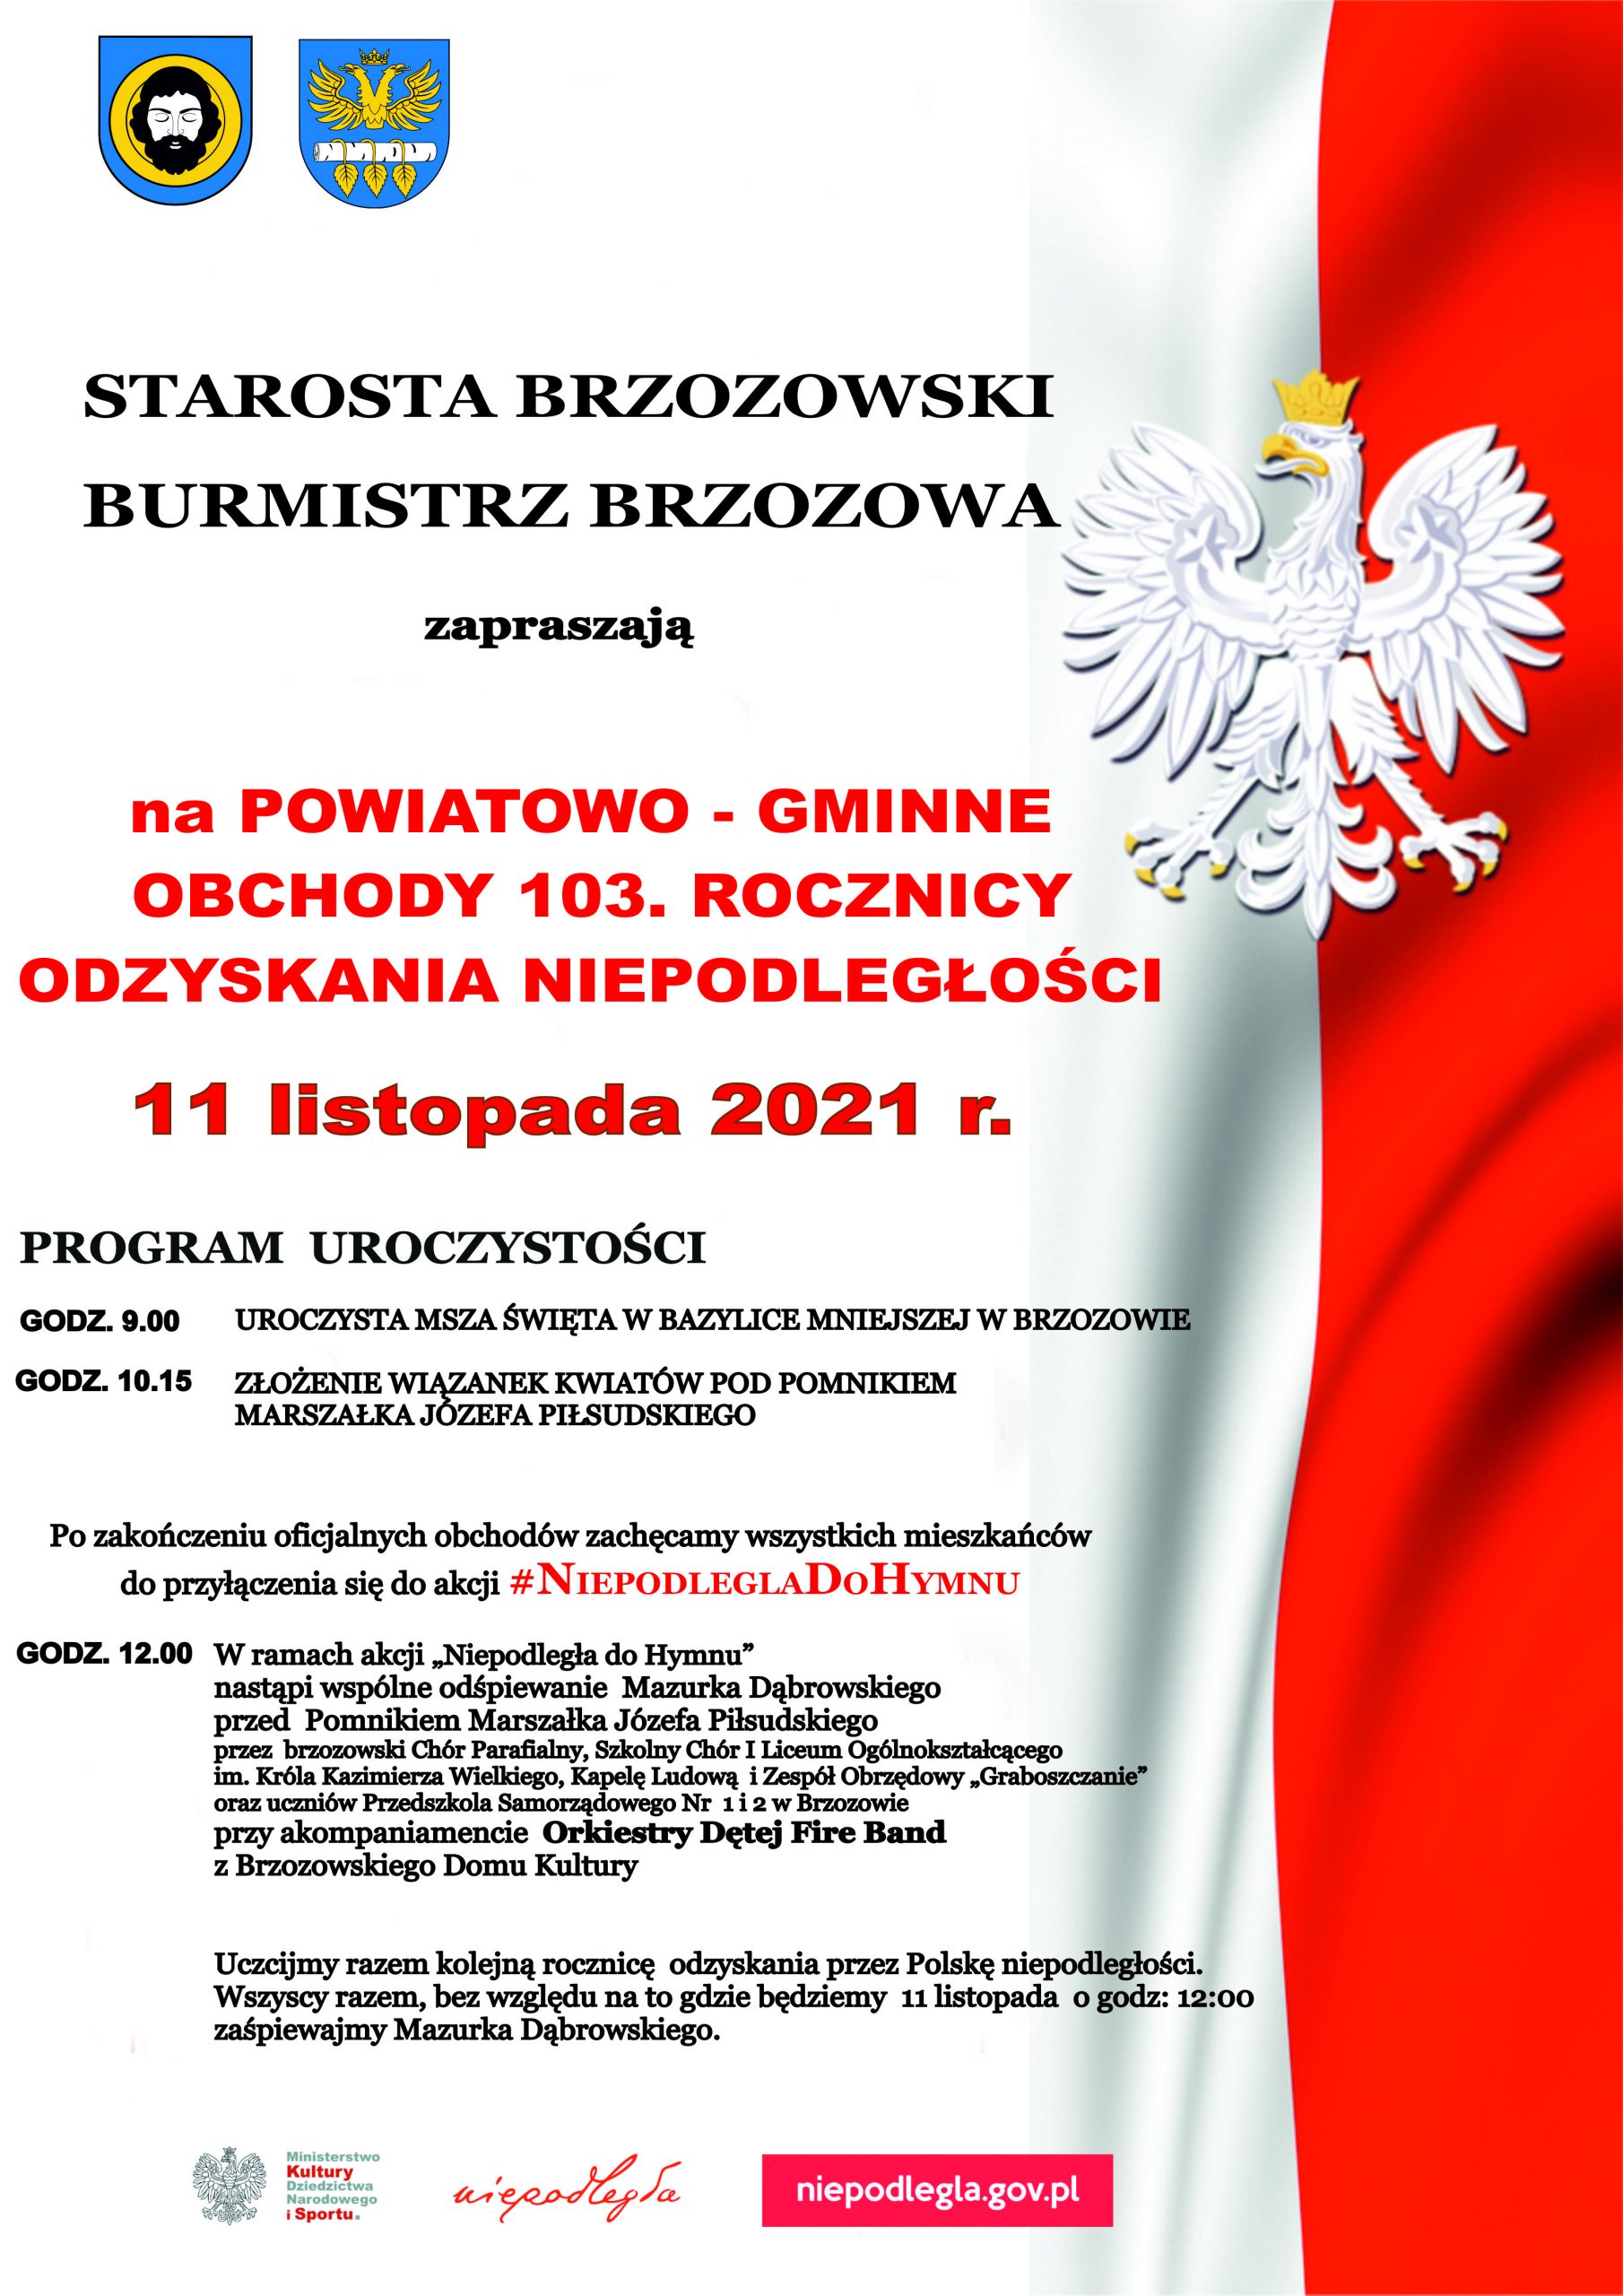 Starosta Brzozowski, Burmistrz Brzozowa zapraszają na 103 miejsko-gminne obchody Święta Niepodległości